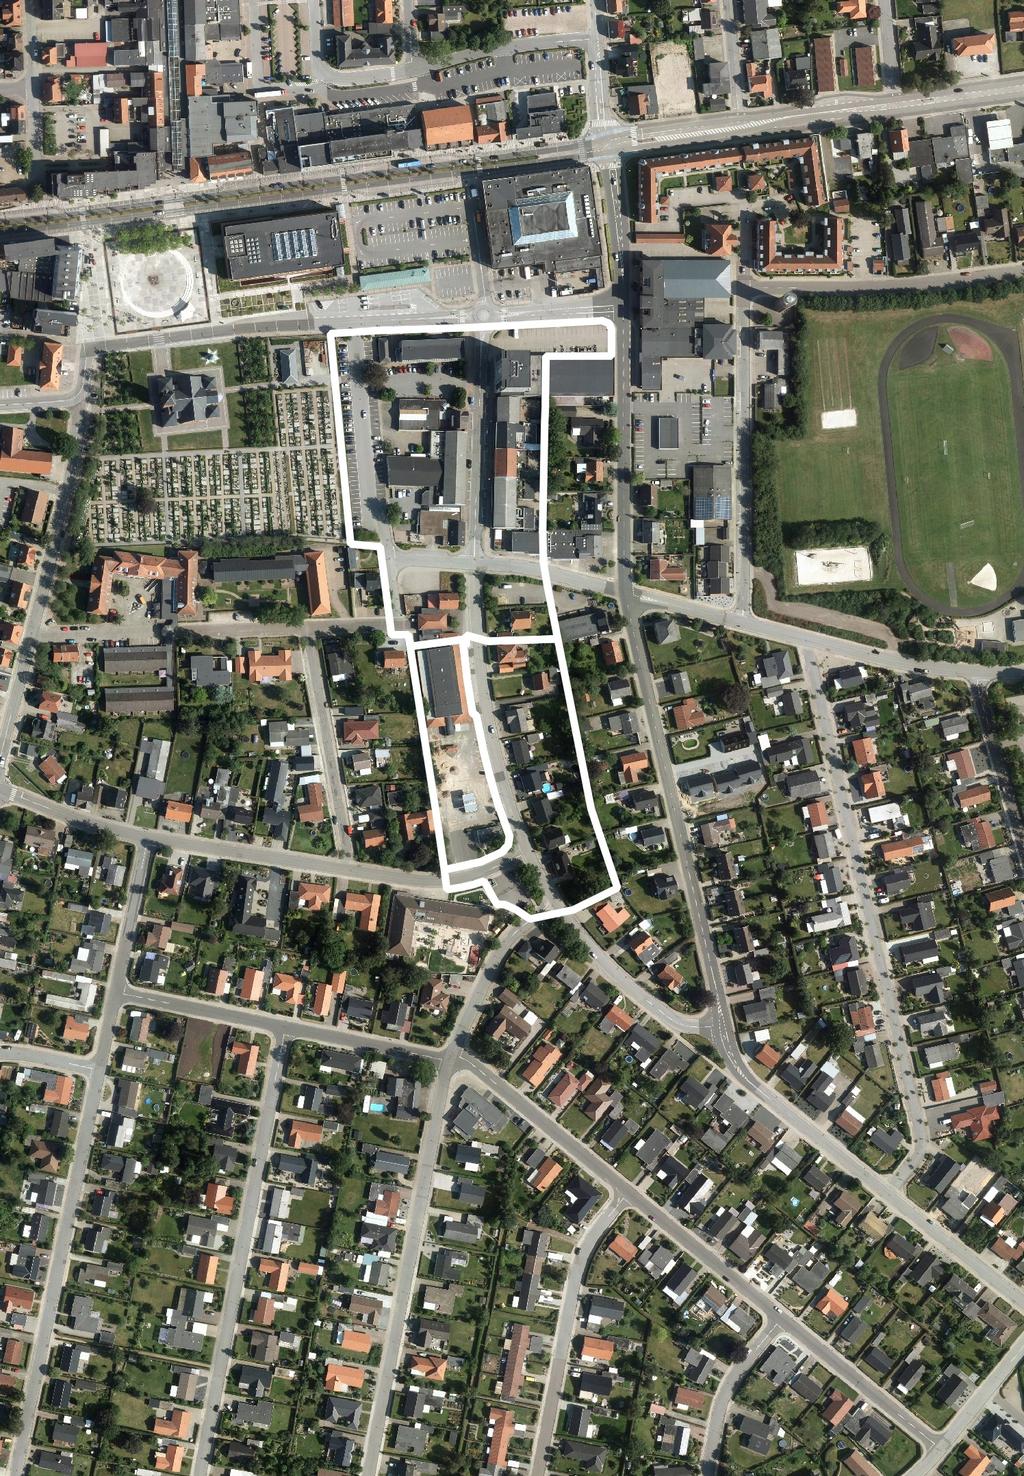 Blandet bolig og erhverv, Møllegade, Ikast Redegørelse Formålet med tillæg nr. 16 til Ikast-Brande Kommuneplan 20132025 er at ændre planlægningen for et område ved Møllegade i det centrale Ikast.